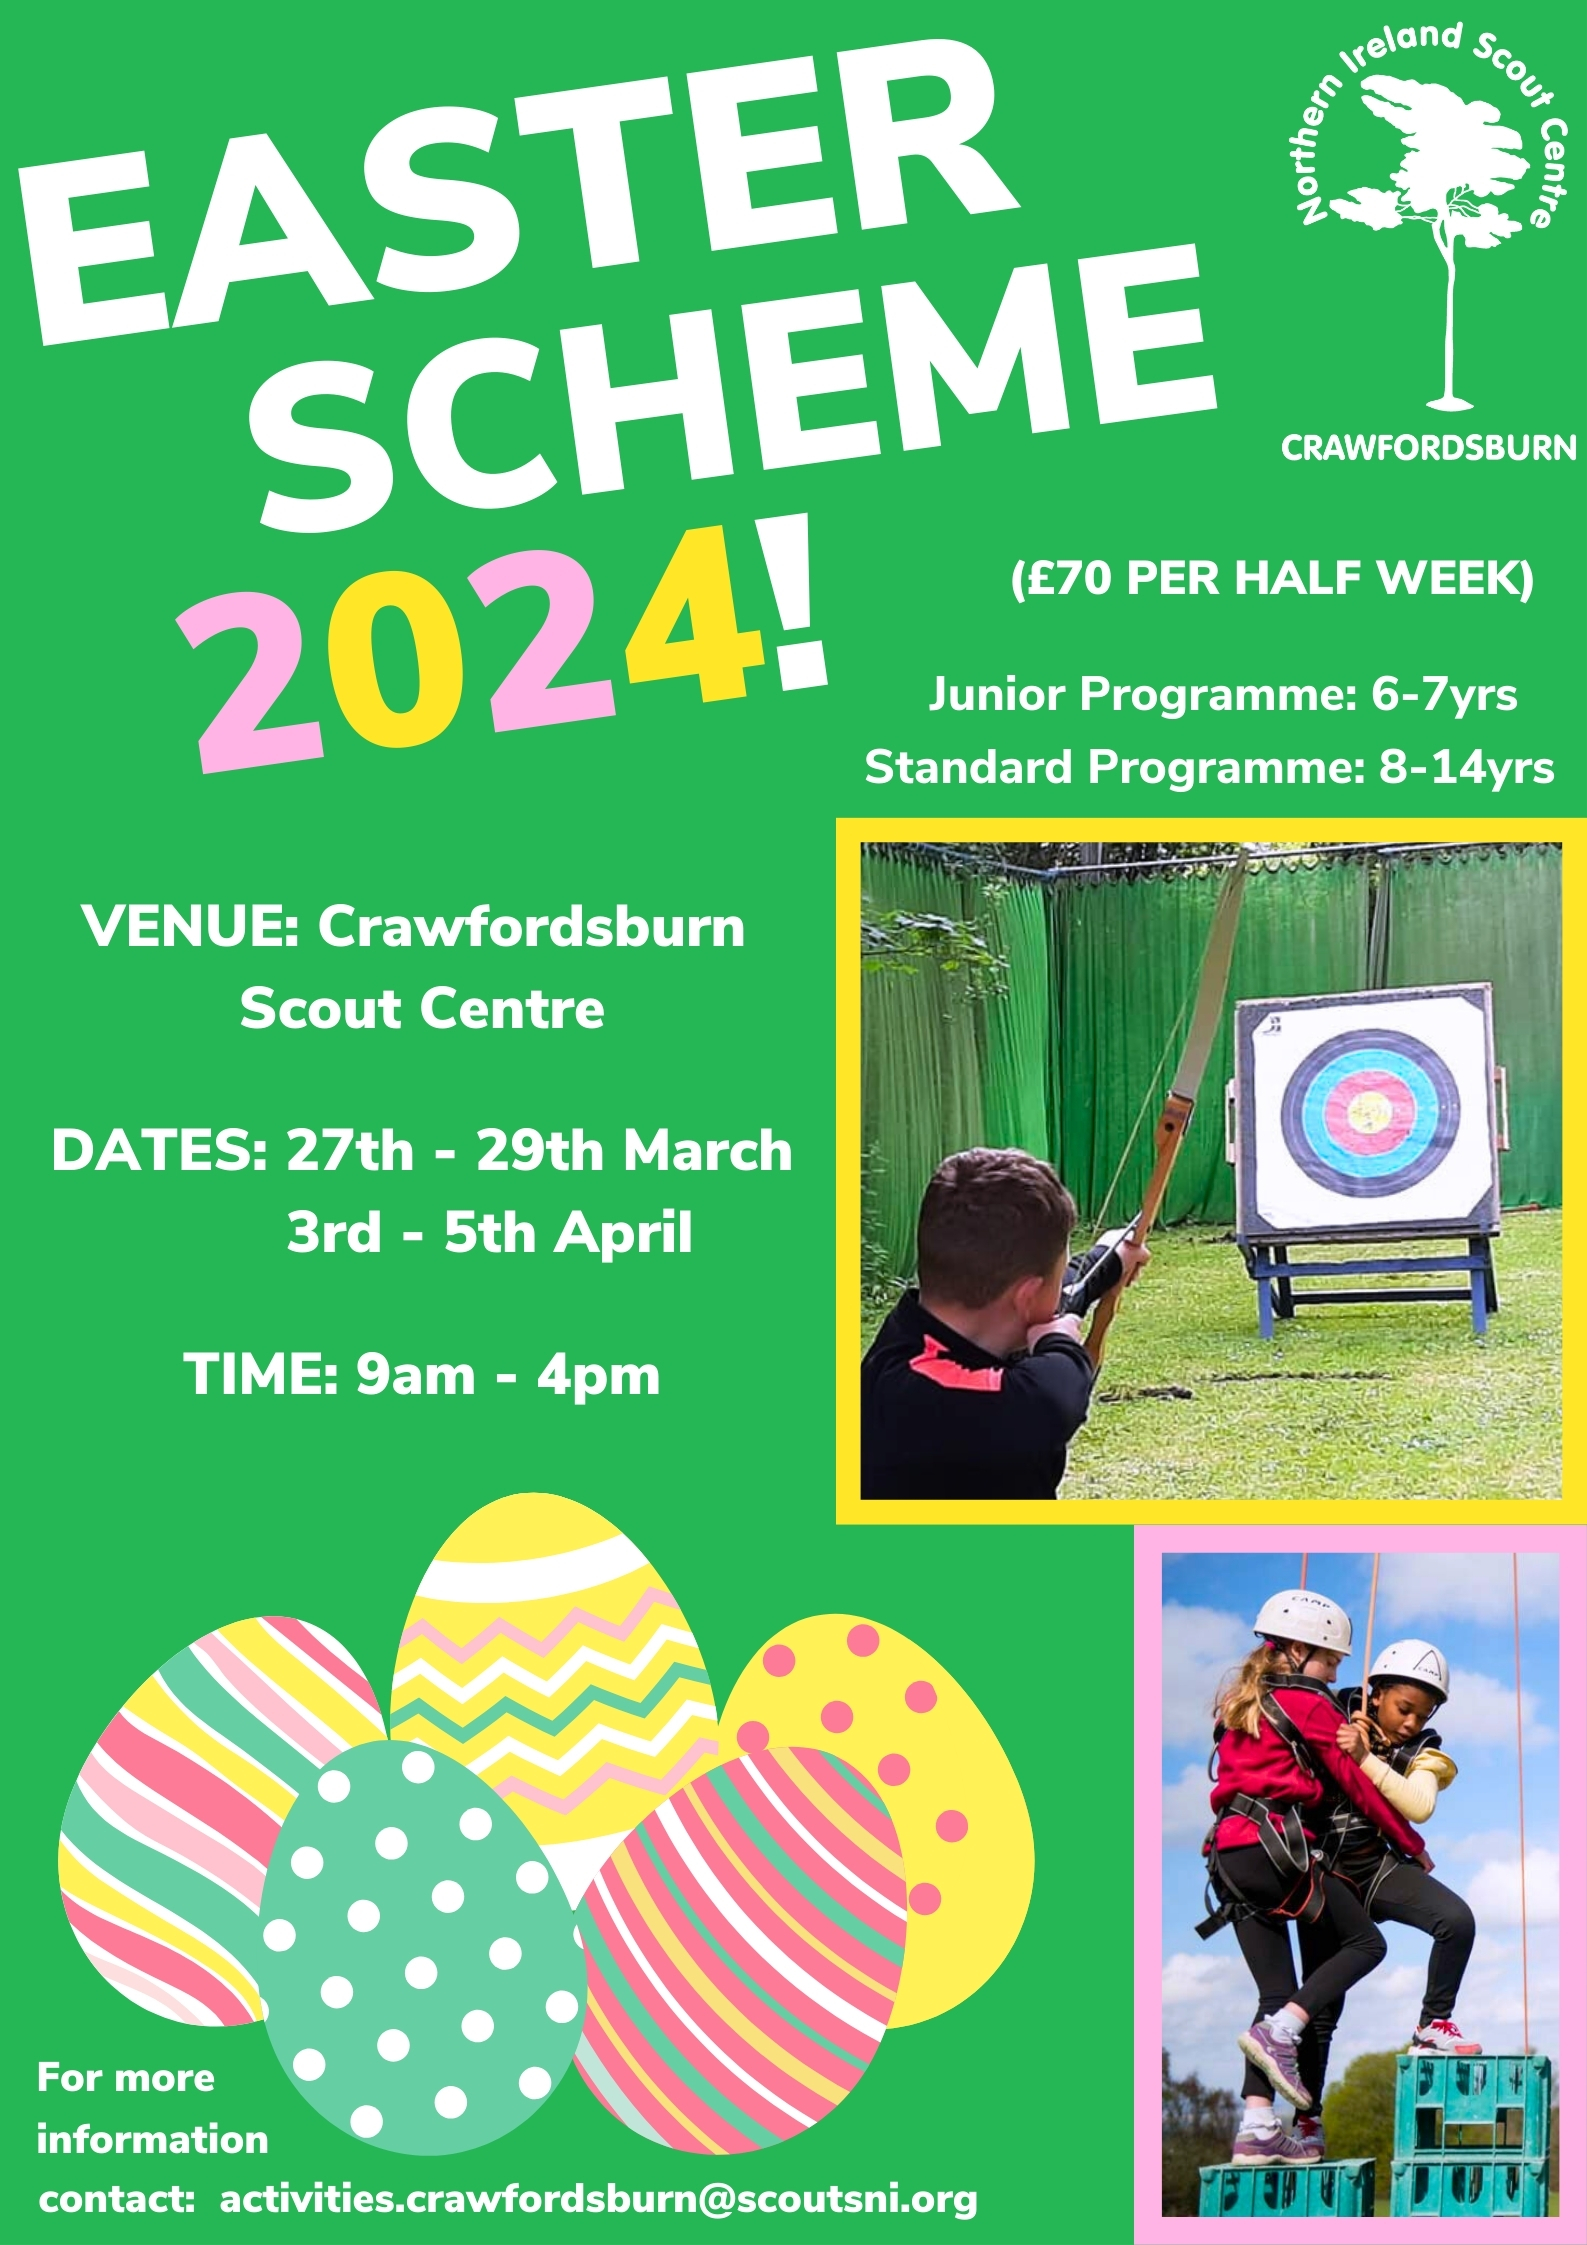 Crawfordsburn Easter Scheme Option 1: Half Week 27th – 29th March